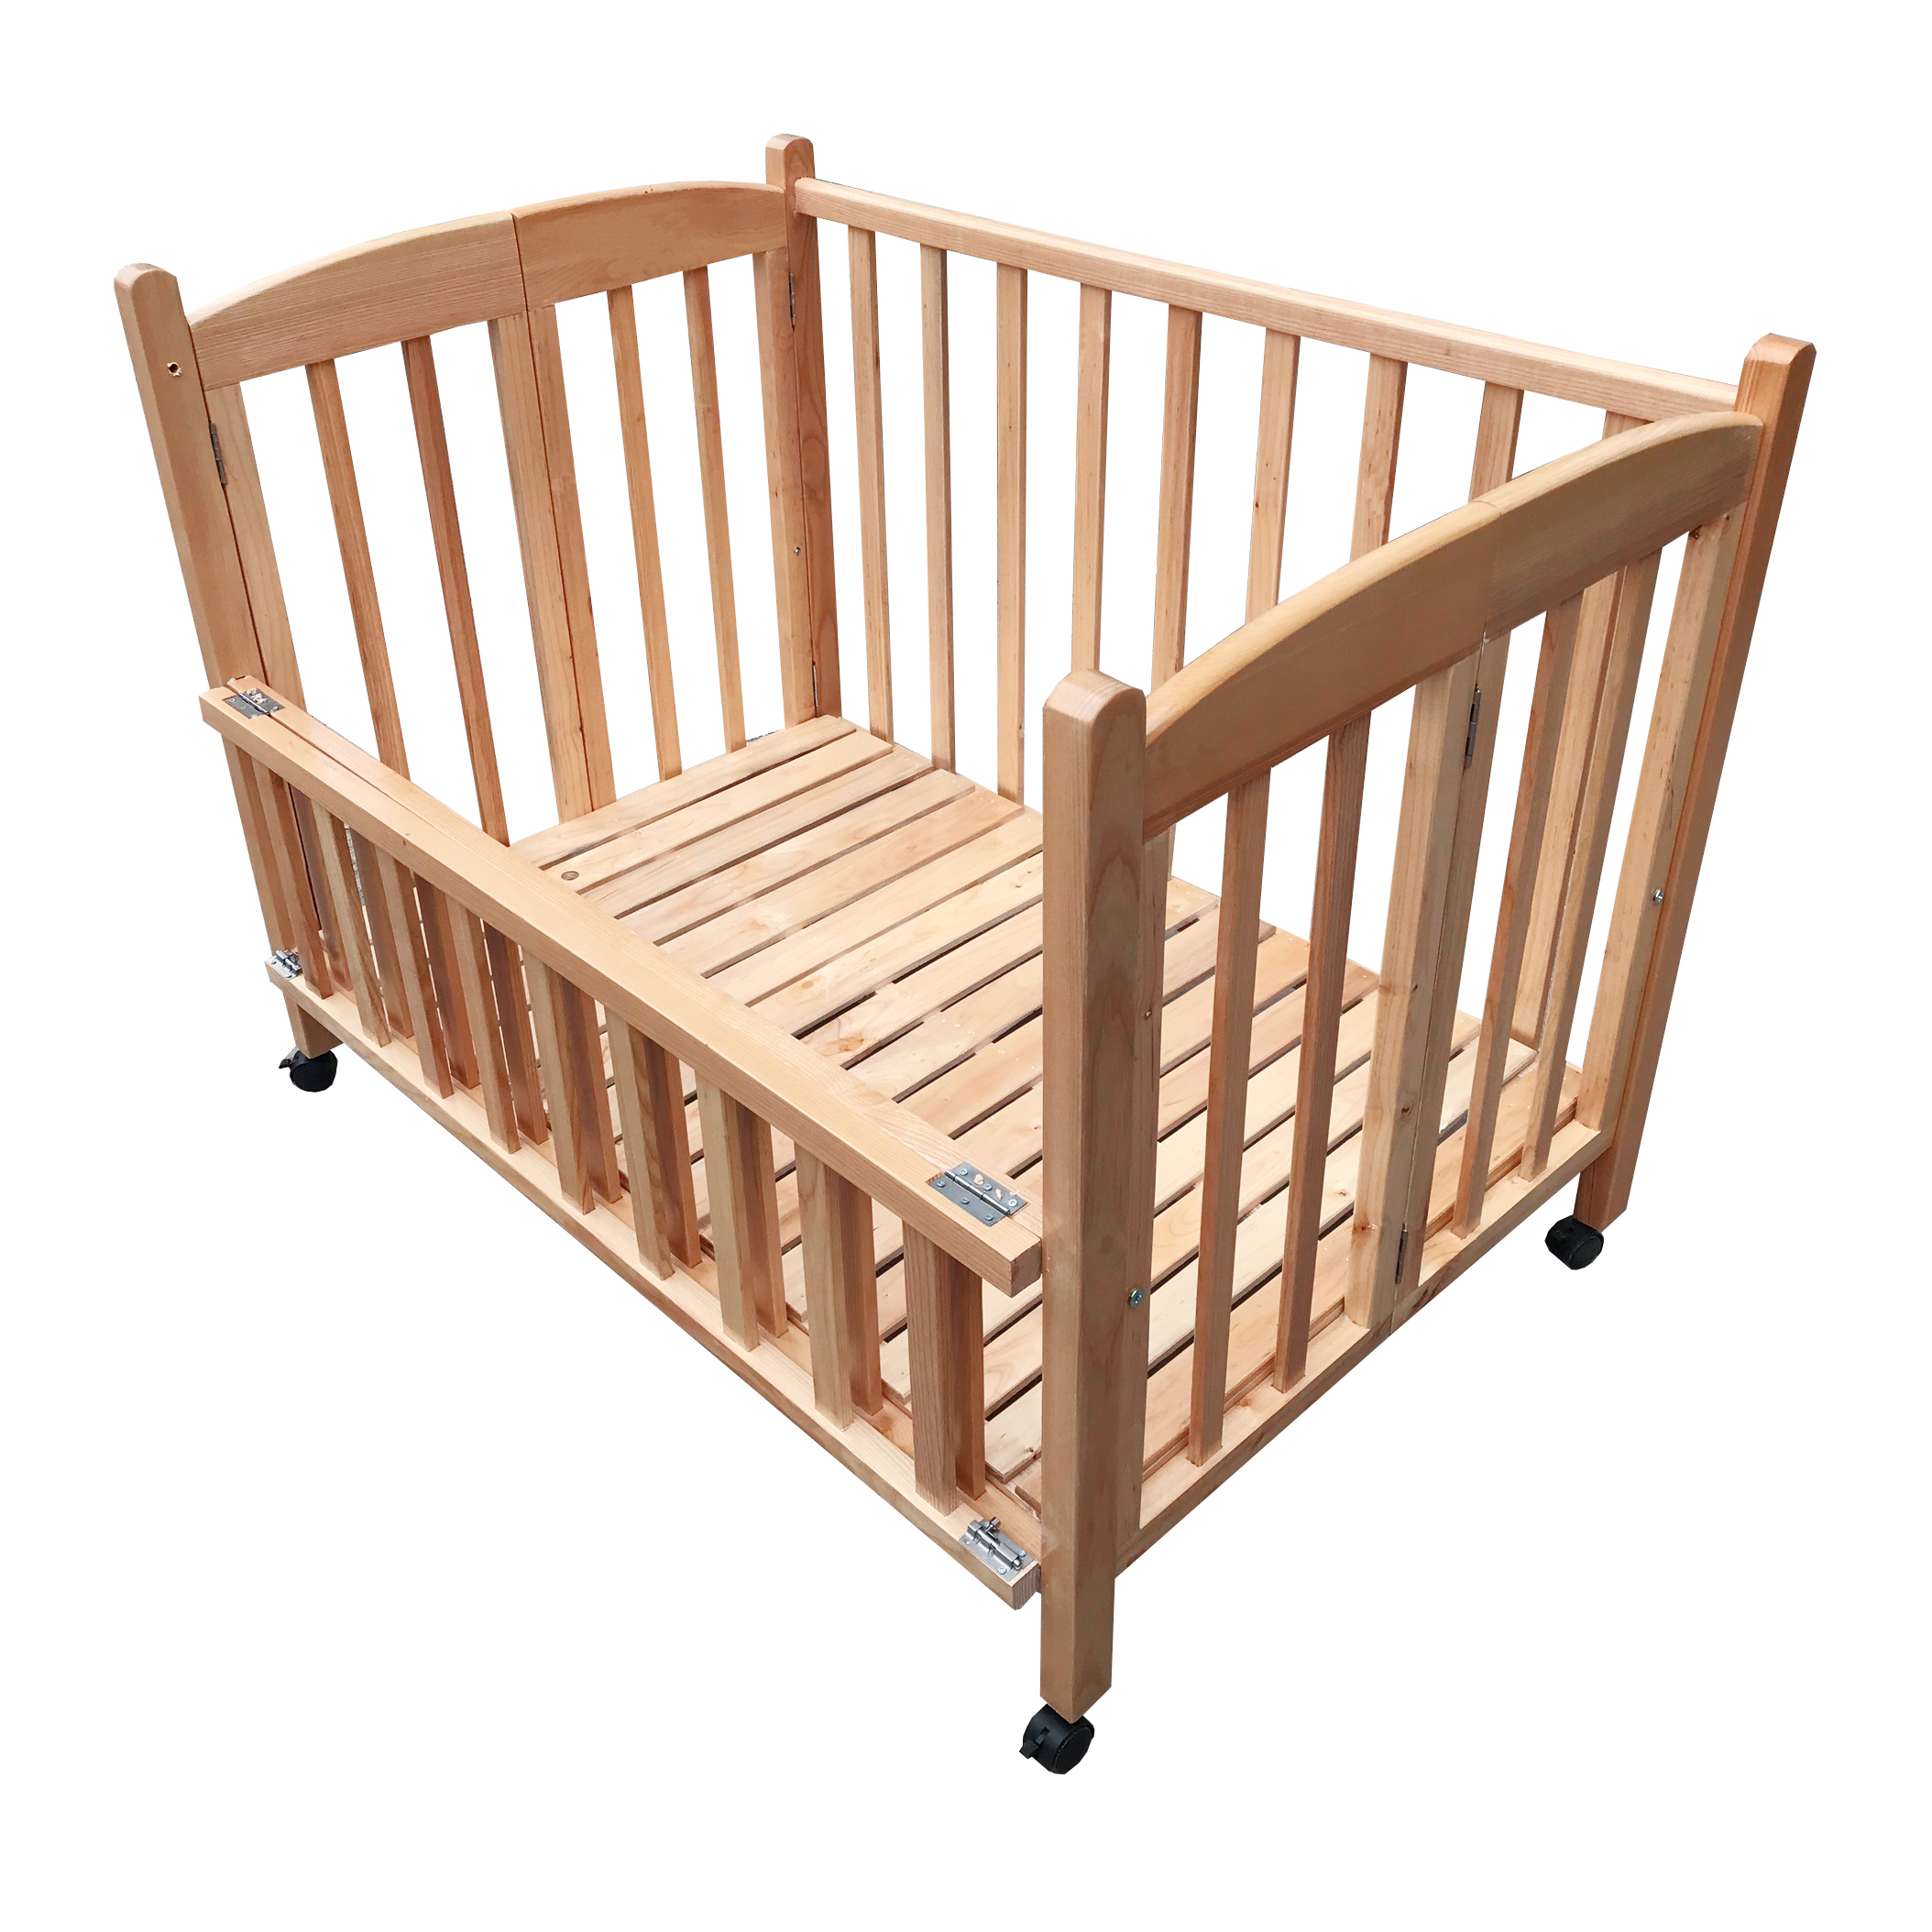 Cũi cho bé - Cũi giường gỗ Sồi cao cấp - Chất lượng và An toàn